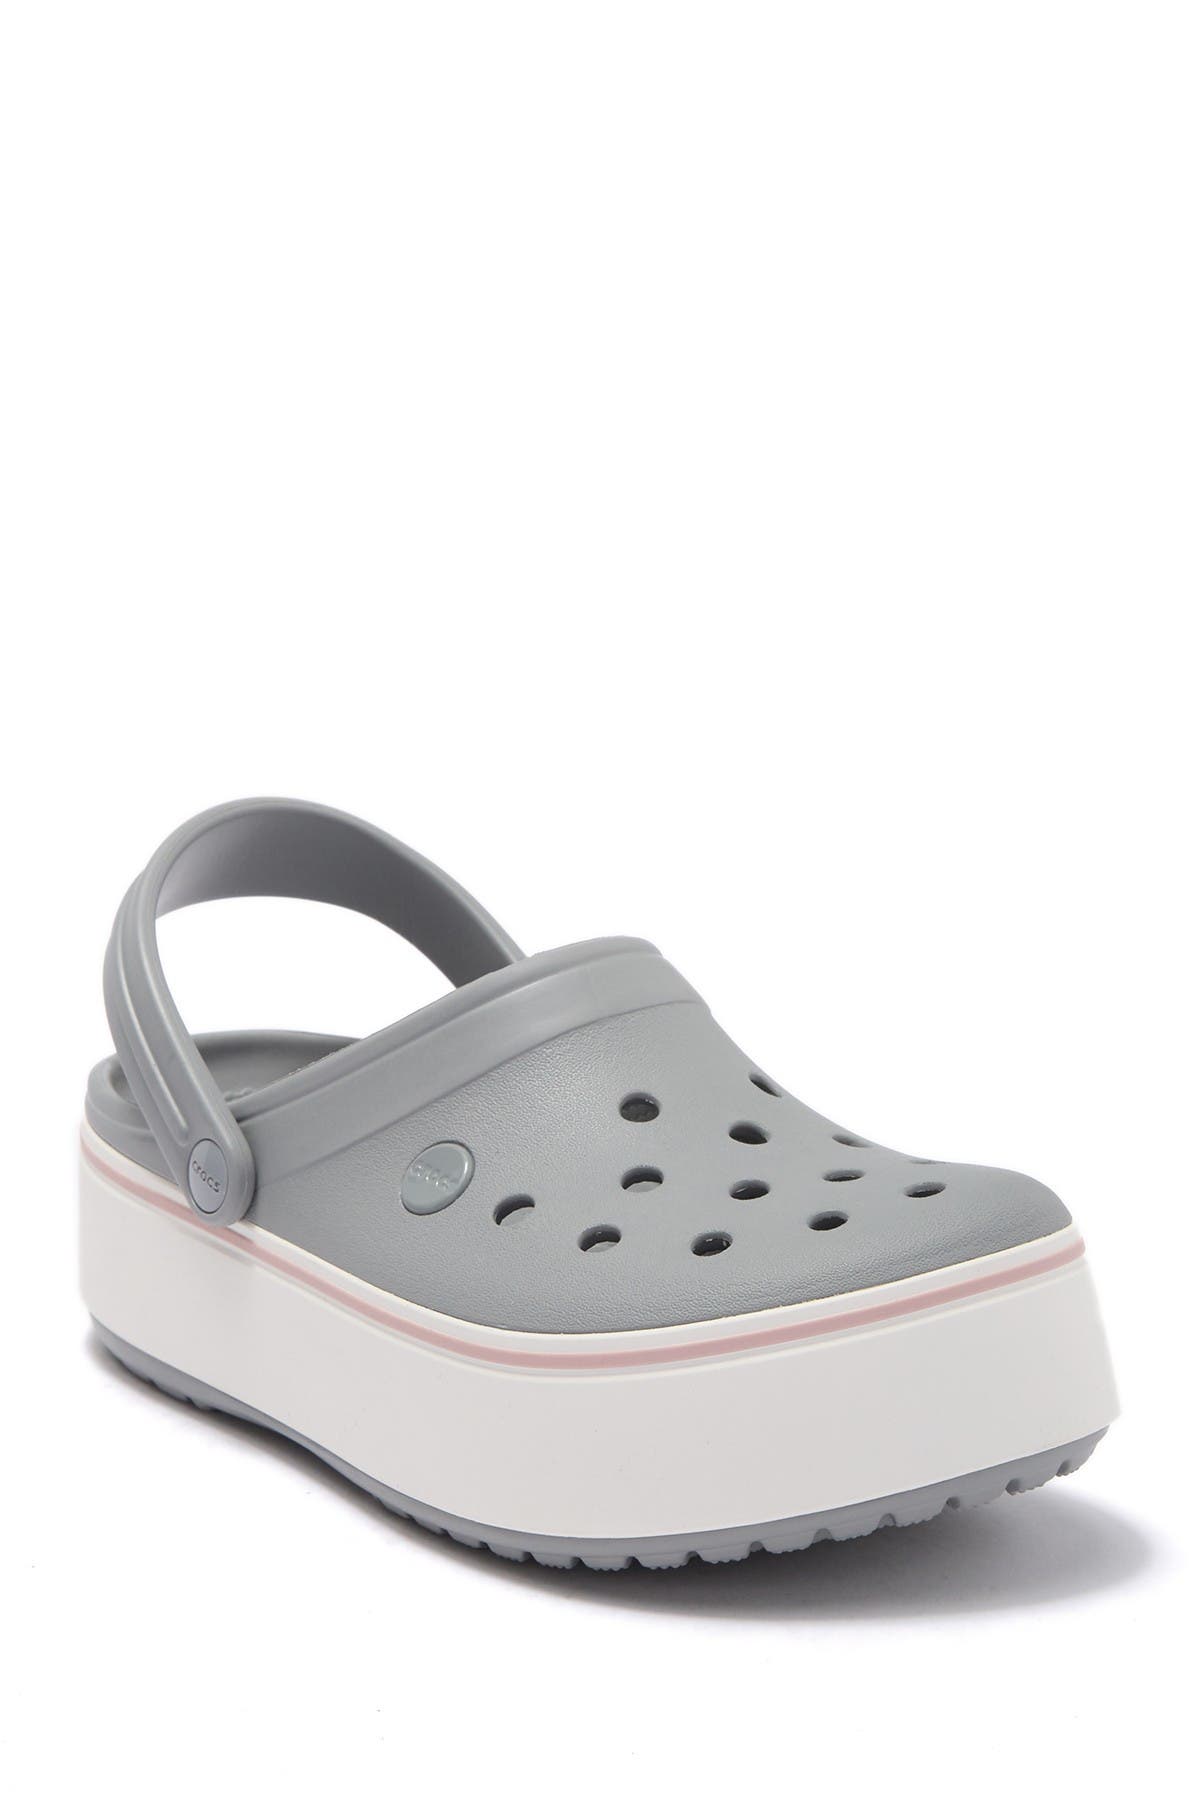 crocs platform grey